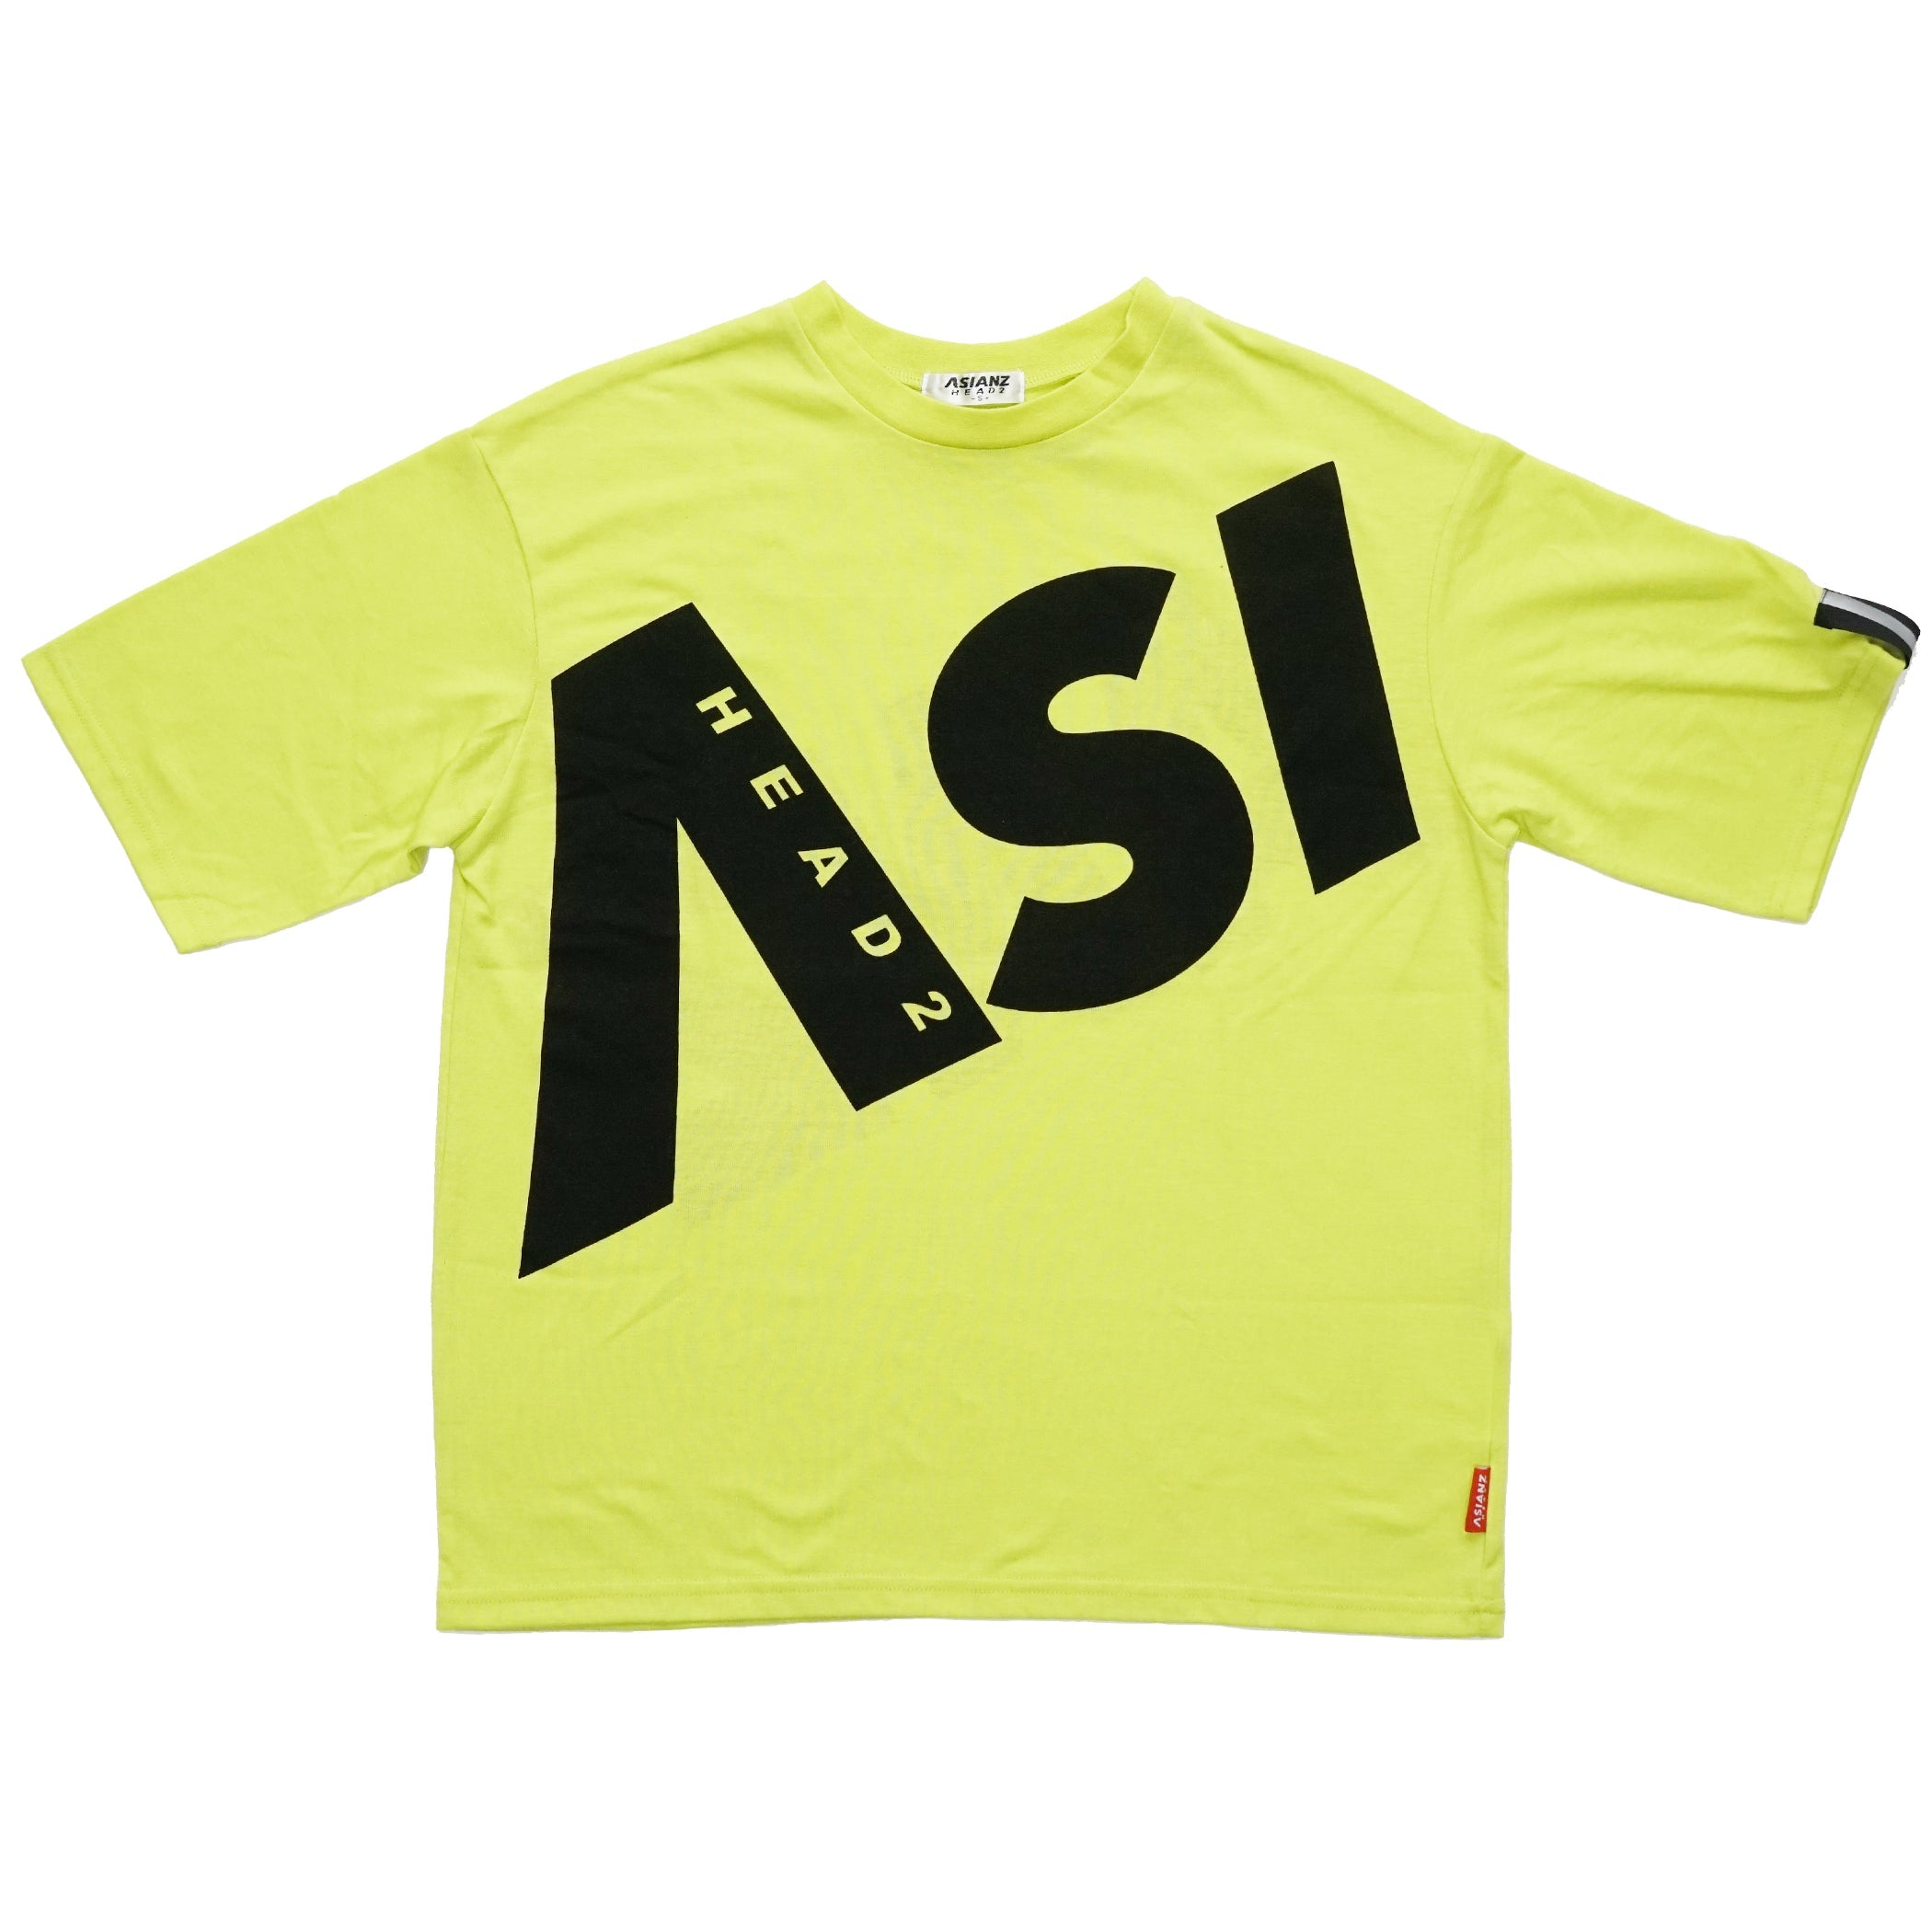 (セール商品) ASIANZ HEAD2 ビッグロゴワイドTシャツ キッズウェアー